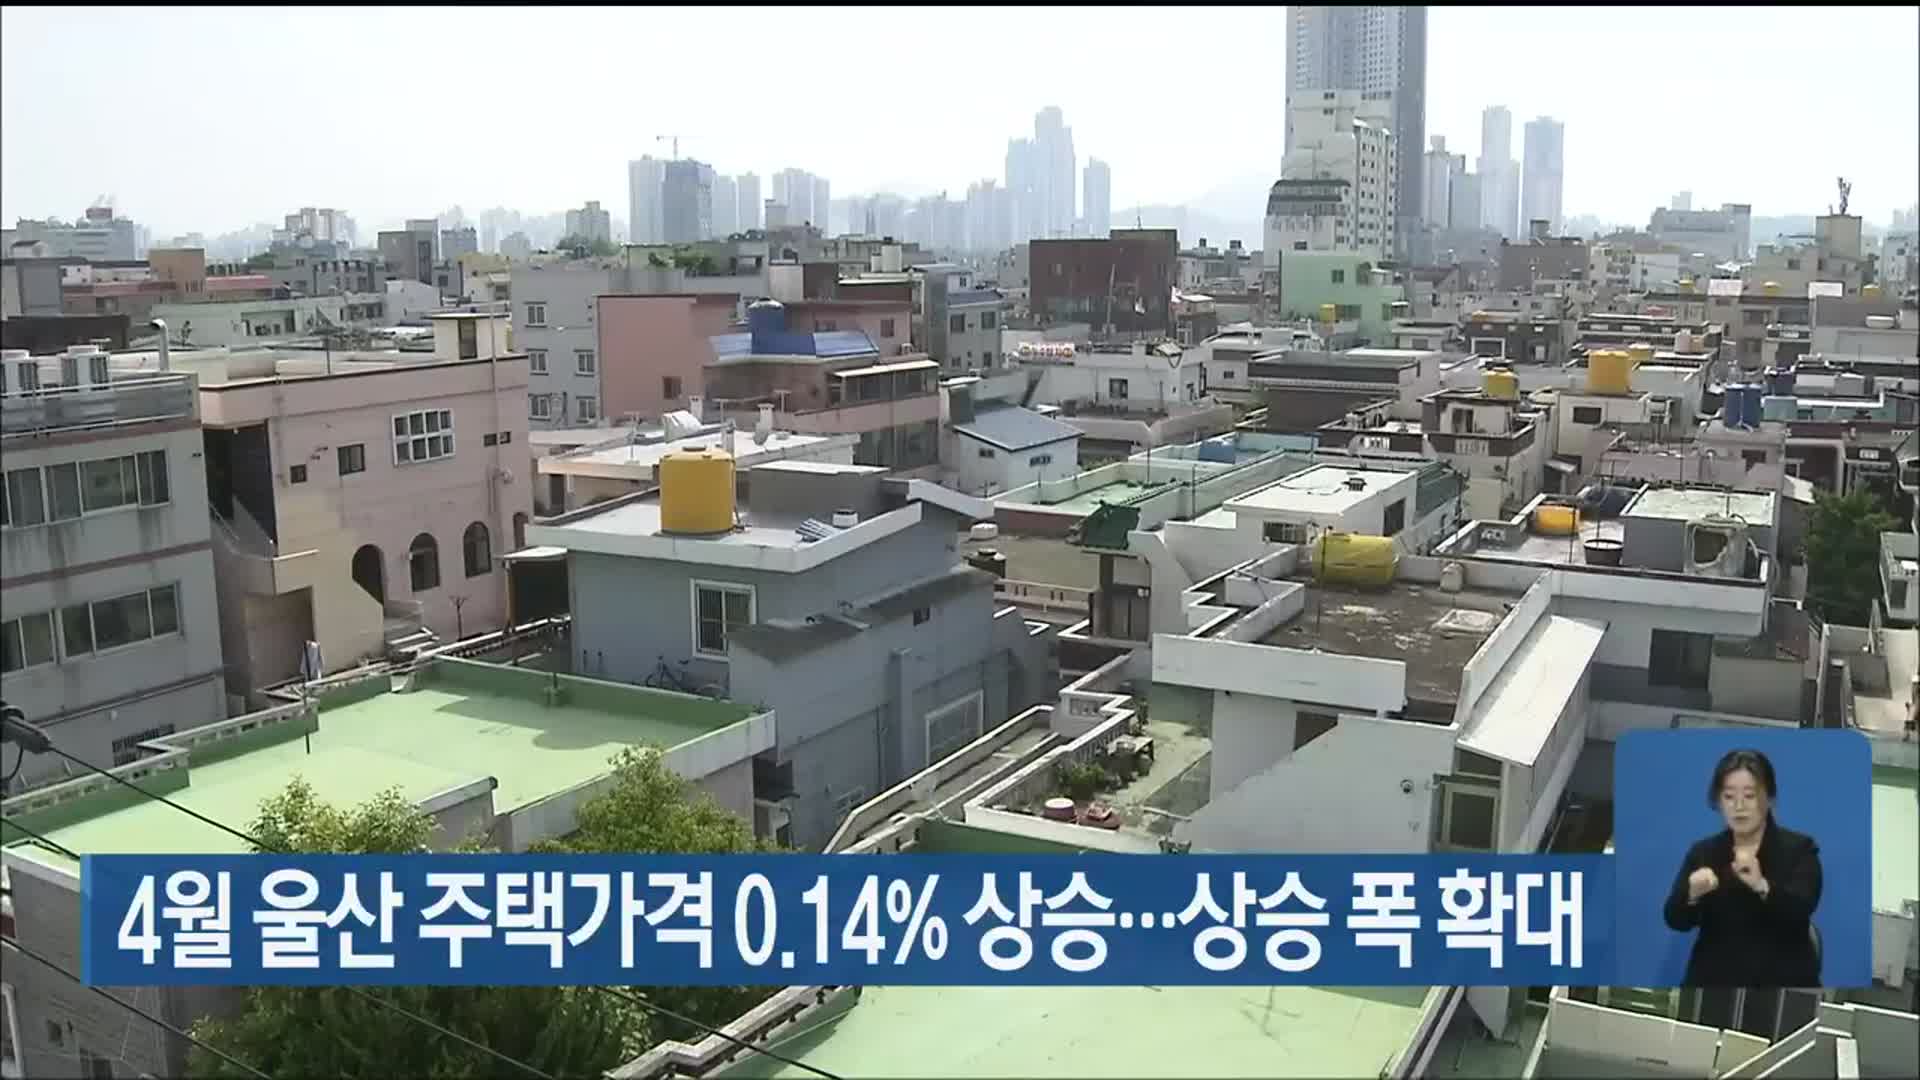 4월 울산 주택가격 0.14% 상승…상승 폭 확대